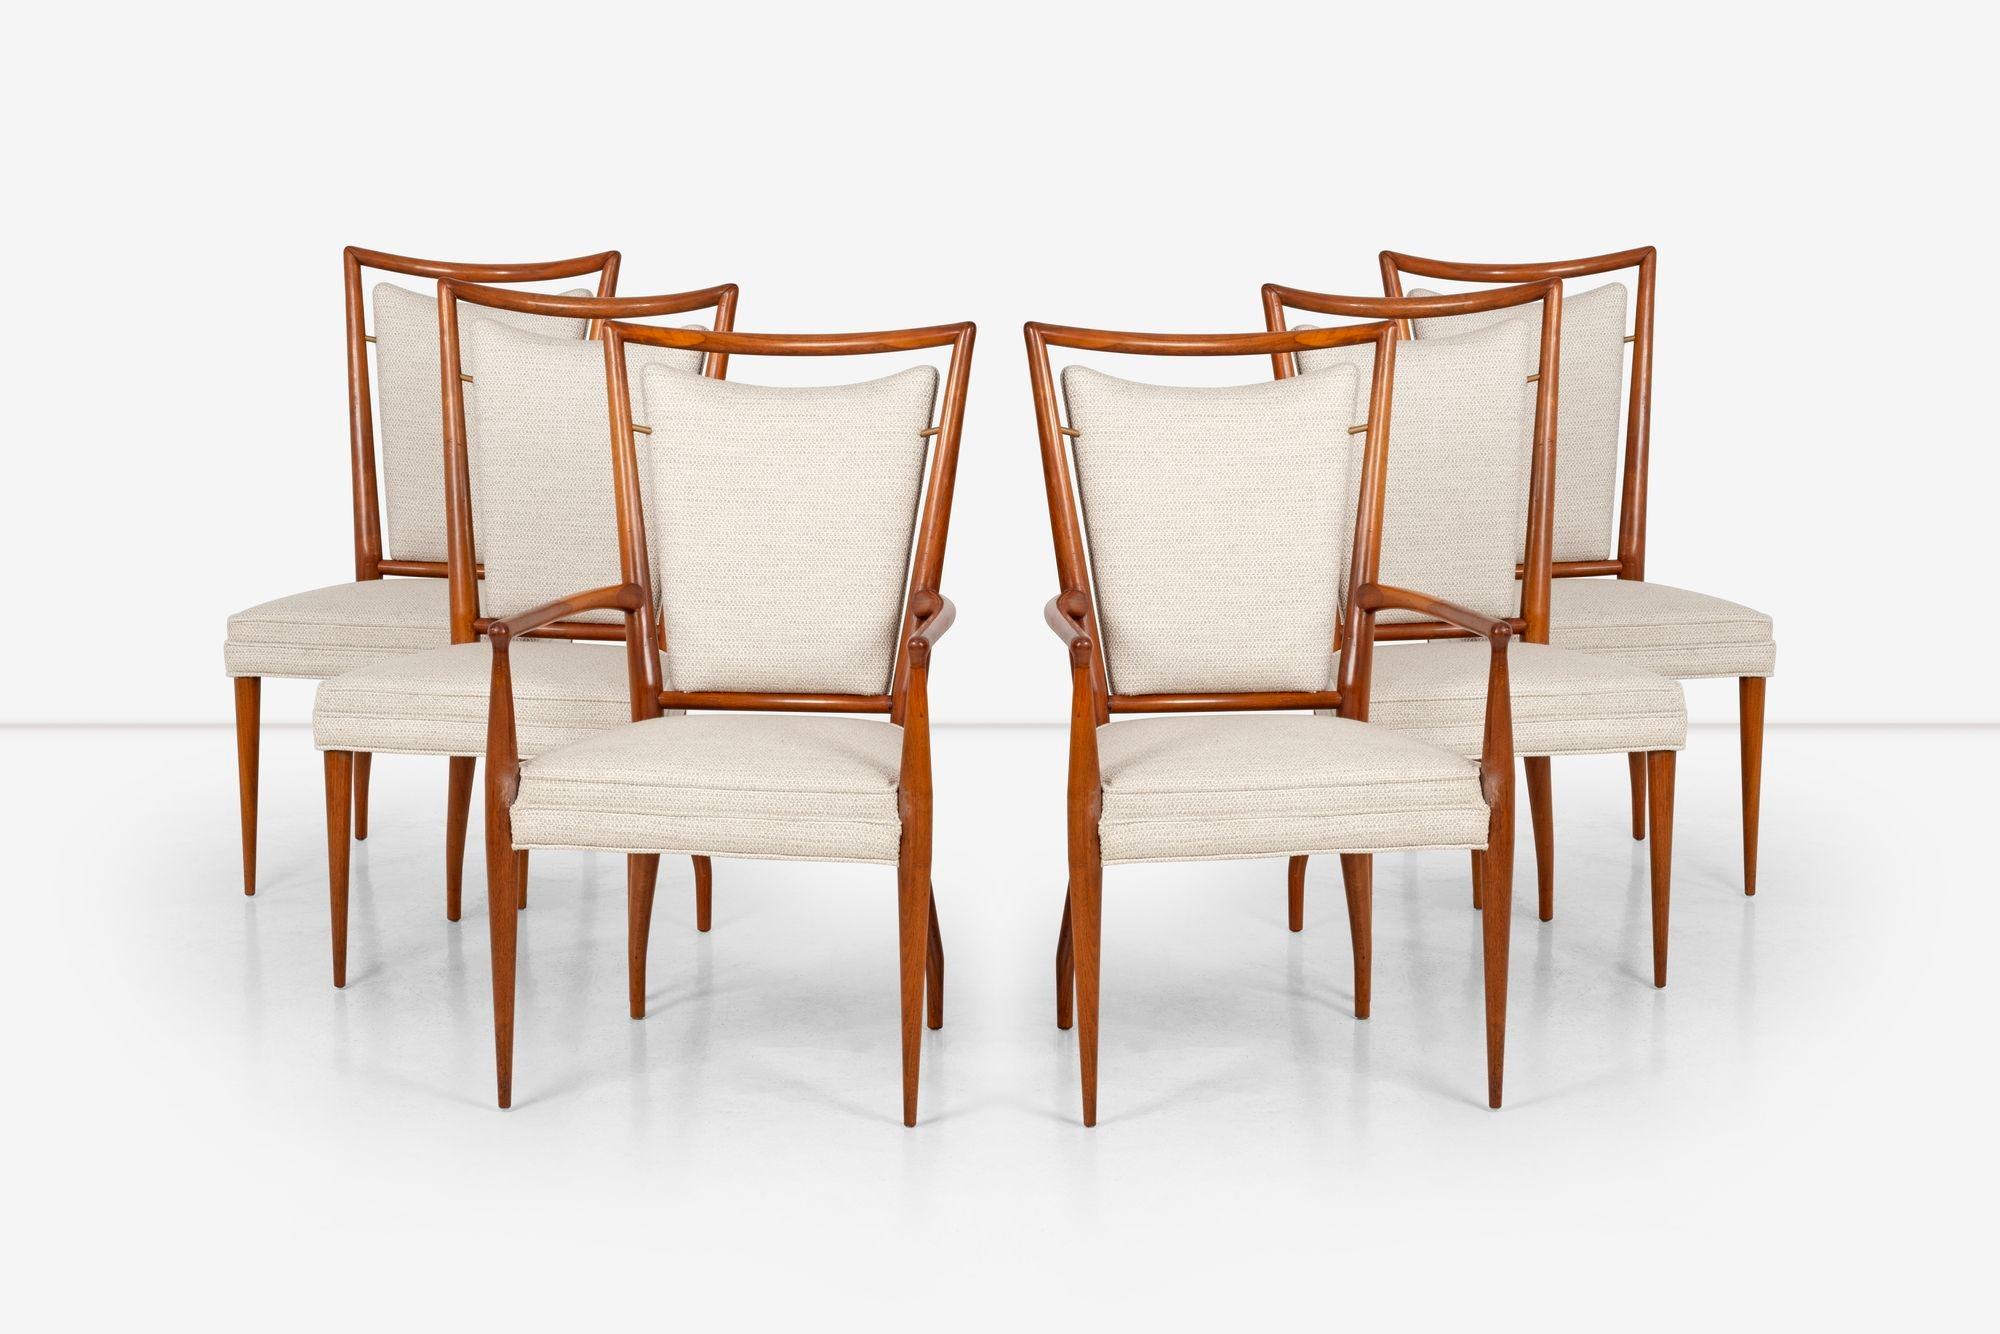 Ein Paar von sechs Esszimmerstühlen von J. Stuart Clingman für Widdicomb. Die Stühle sind aus massivem Mahagoniholz gefertigt, lackiert und mit Abstandshaltern aus Messing versehen. Sie wurden mit einem Baumwoll-Polyester-Gewebe neu gepolstert.
J.